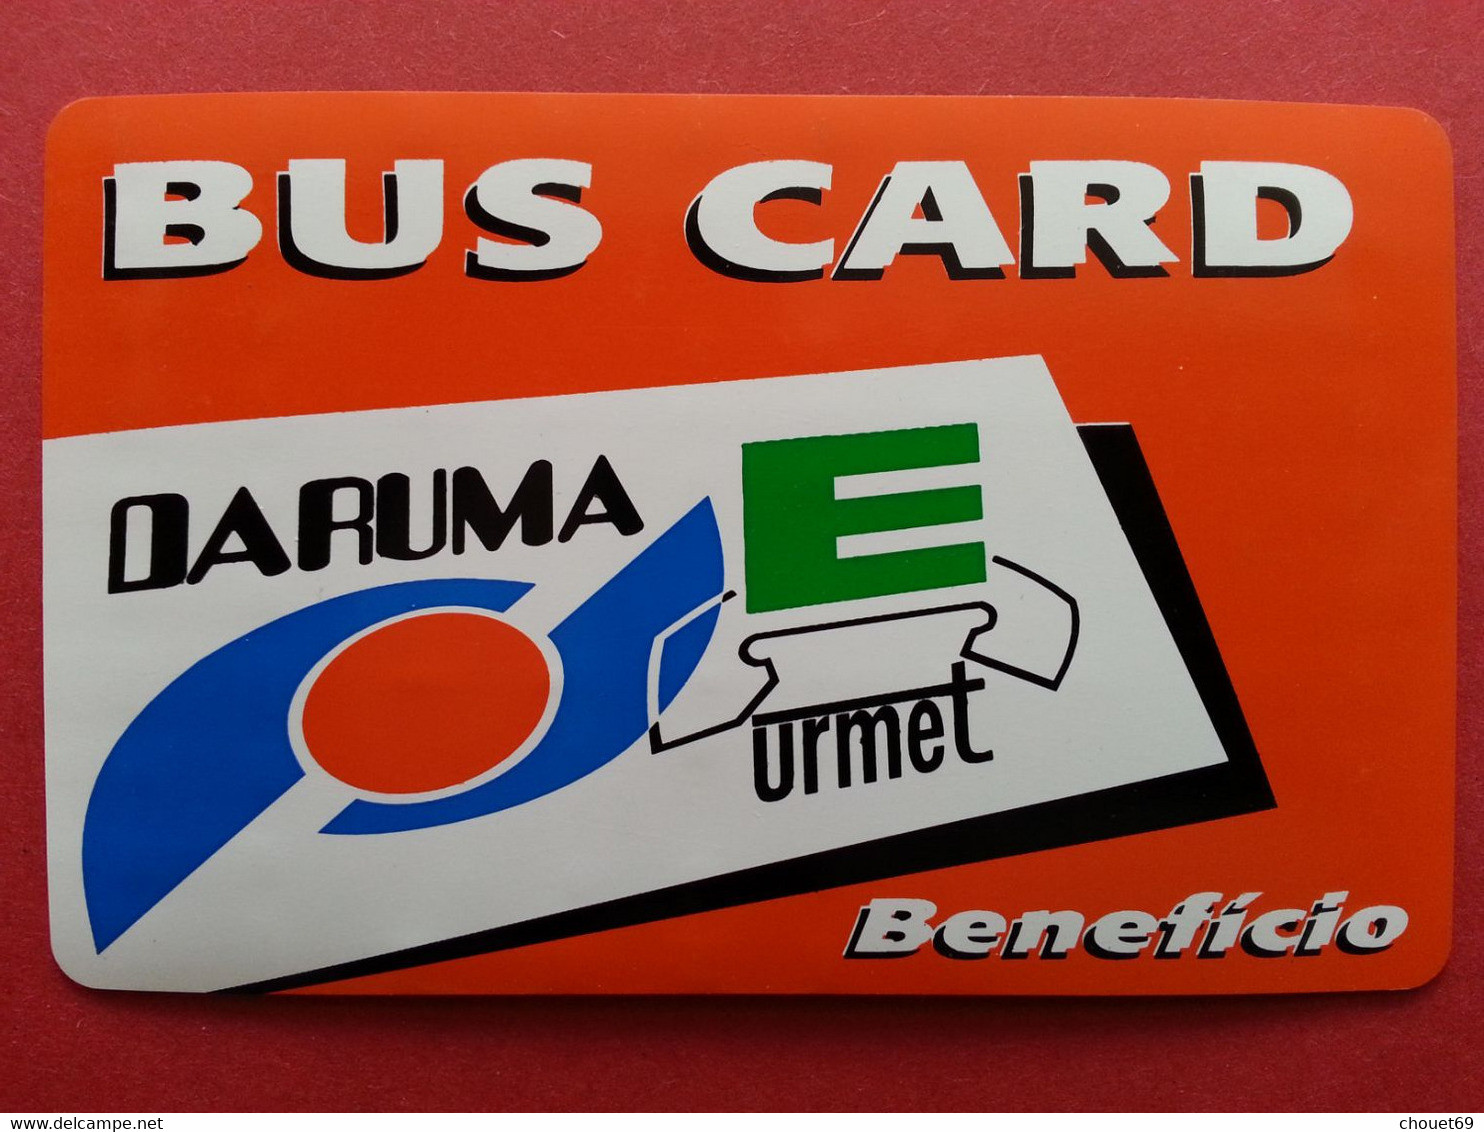 BUS CARD ORANGE Daruma URMET 10u Telephone Test Inductive Mint Unused Neuve (BA1019 - Tests & Services